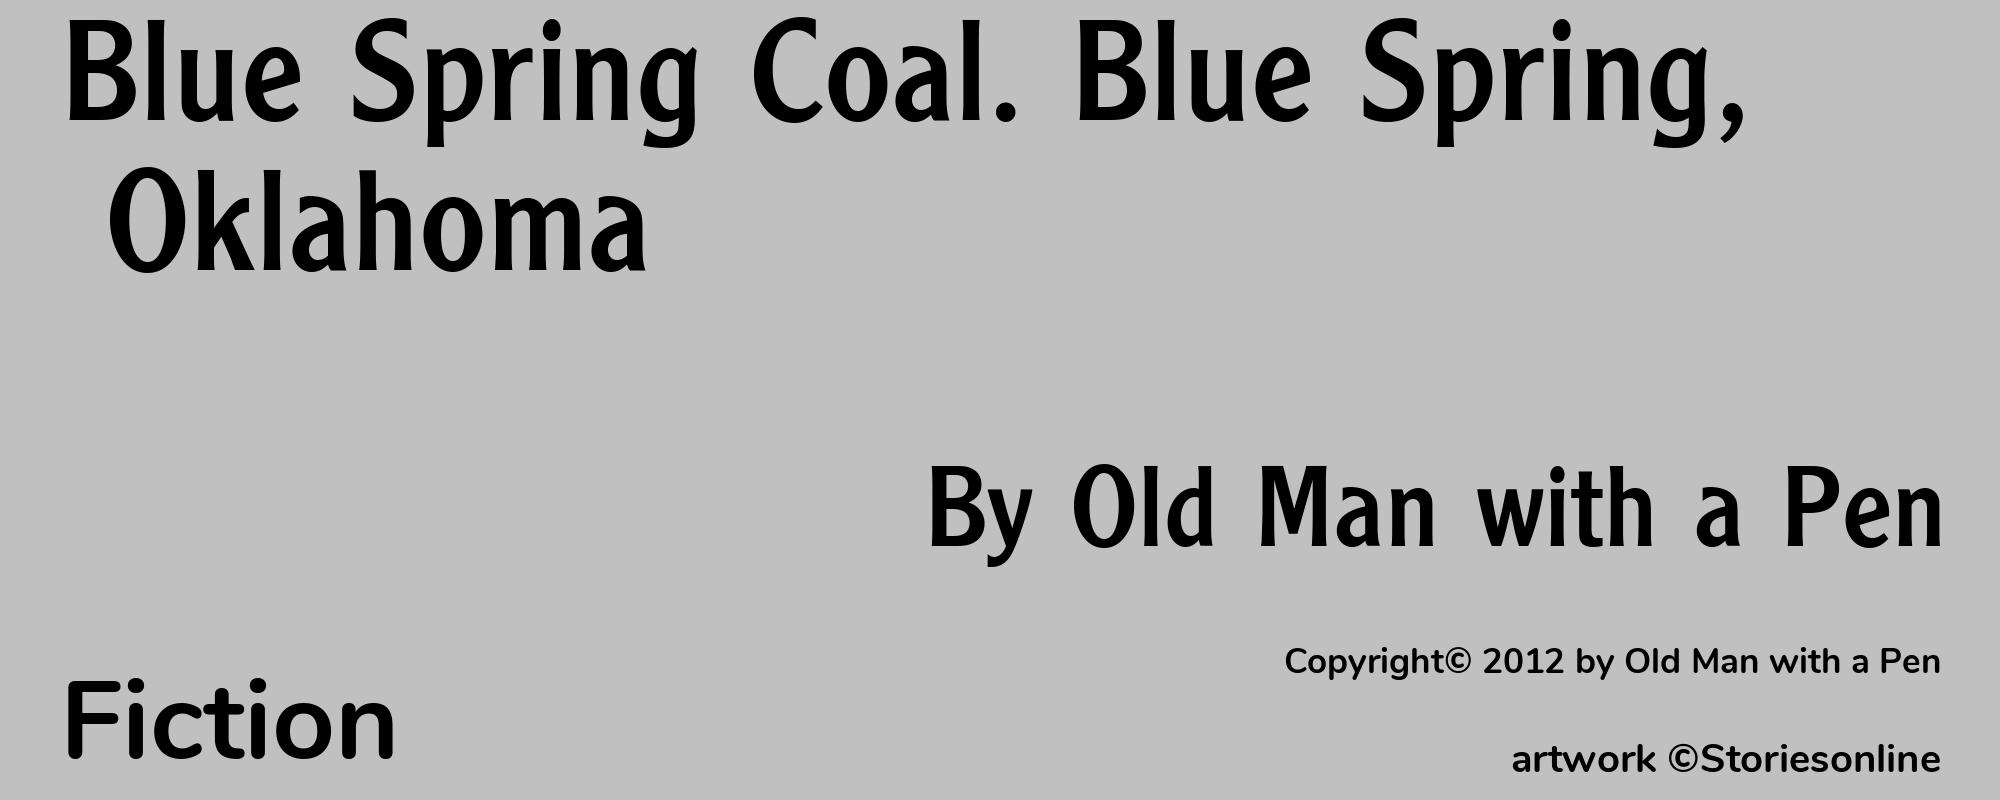 Blue Spring Coal. Blue Spring, Oklahoma - Cover